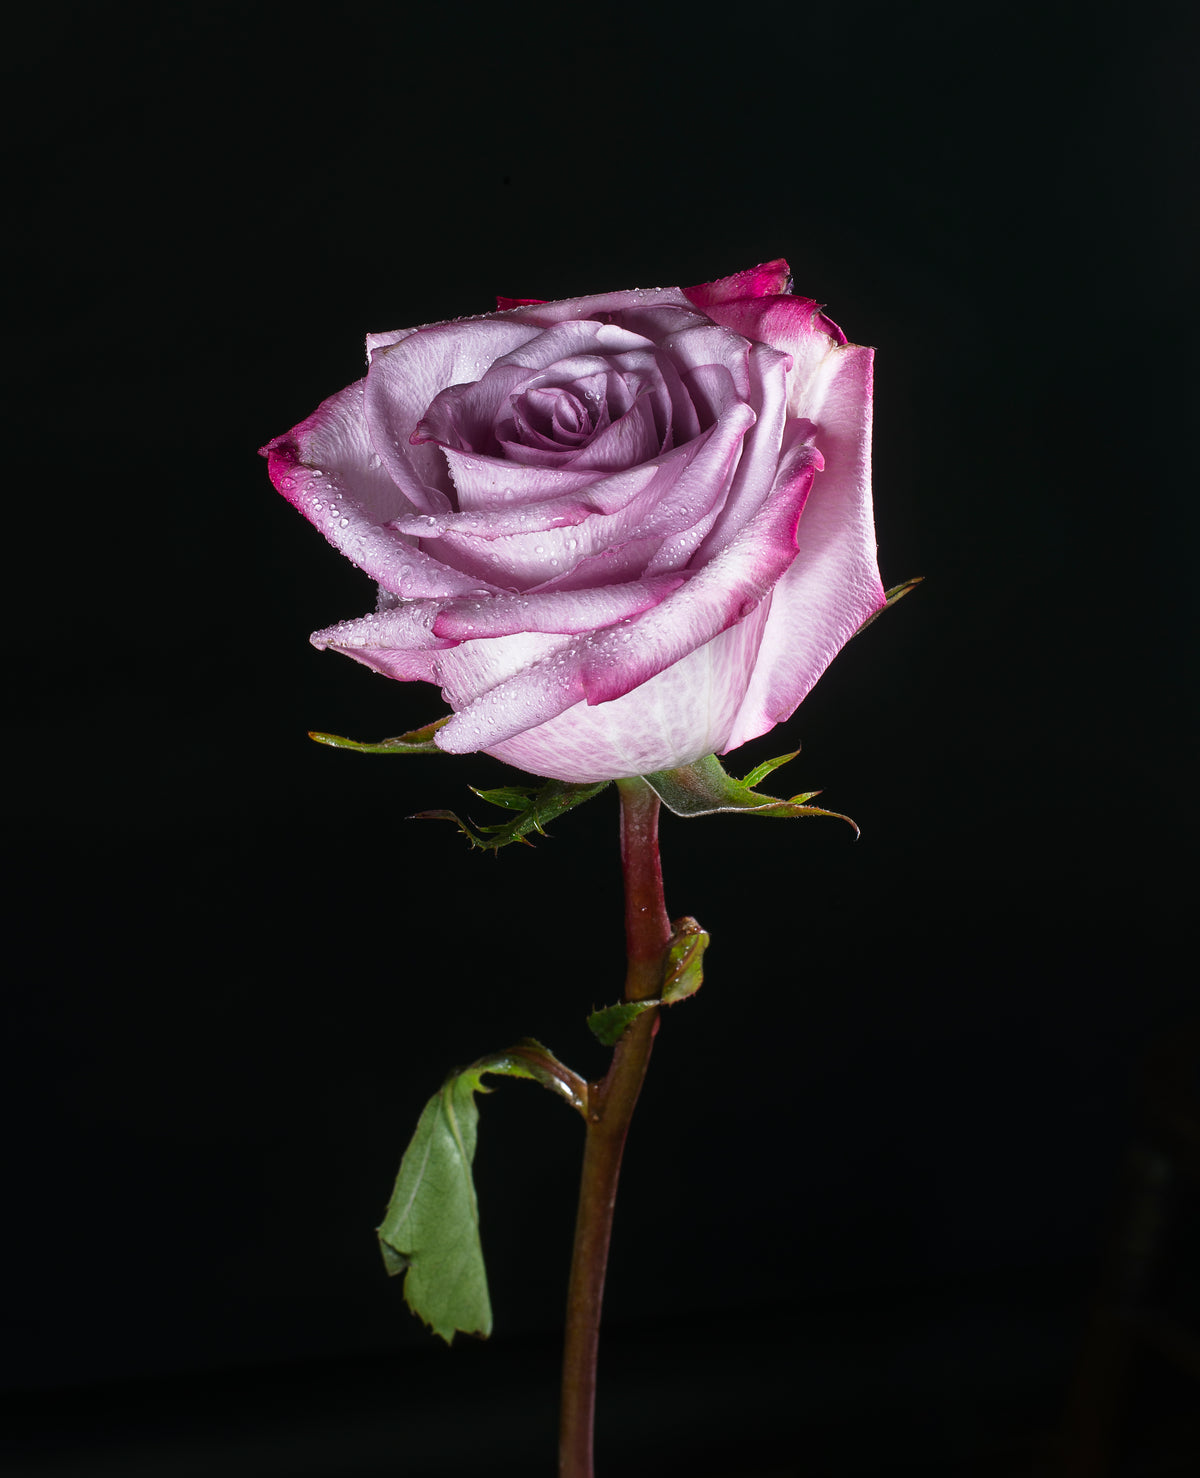 rosa roxa na escuridão